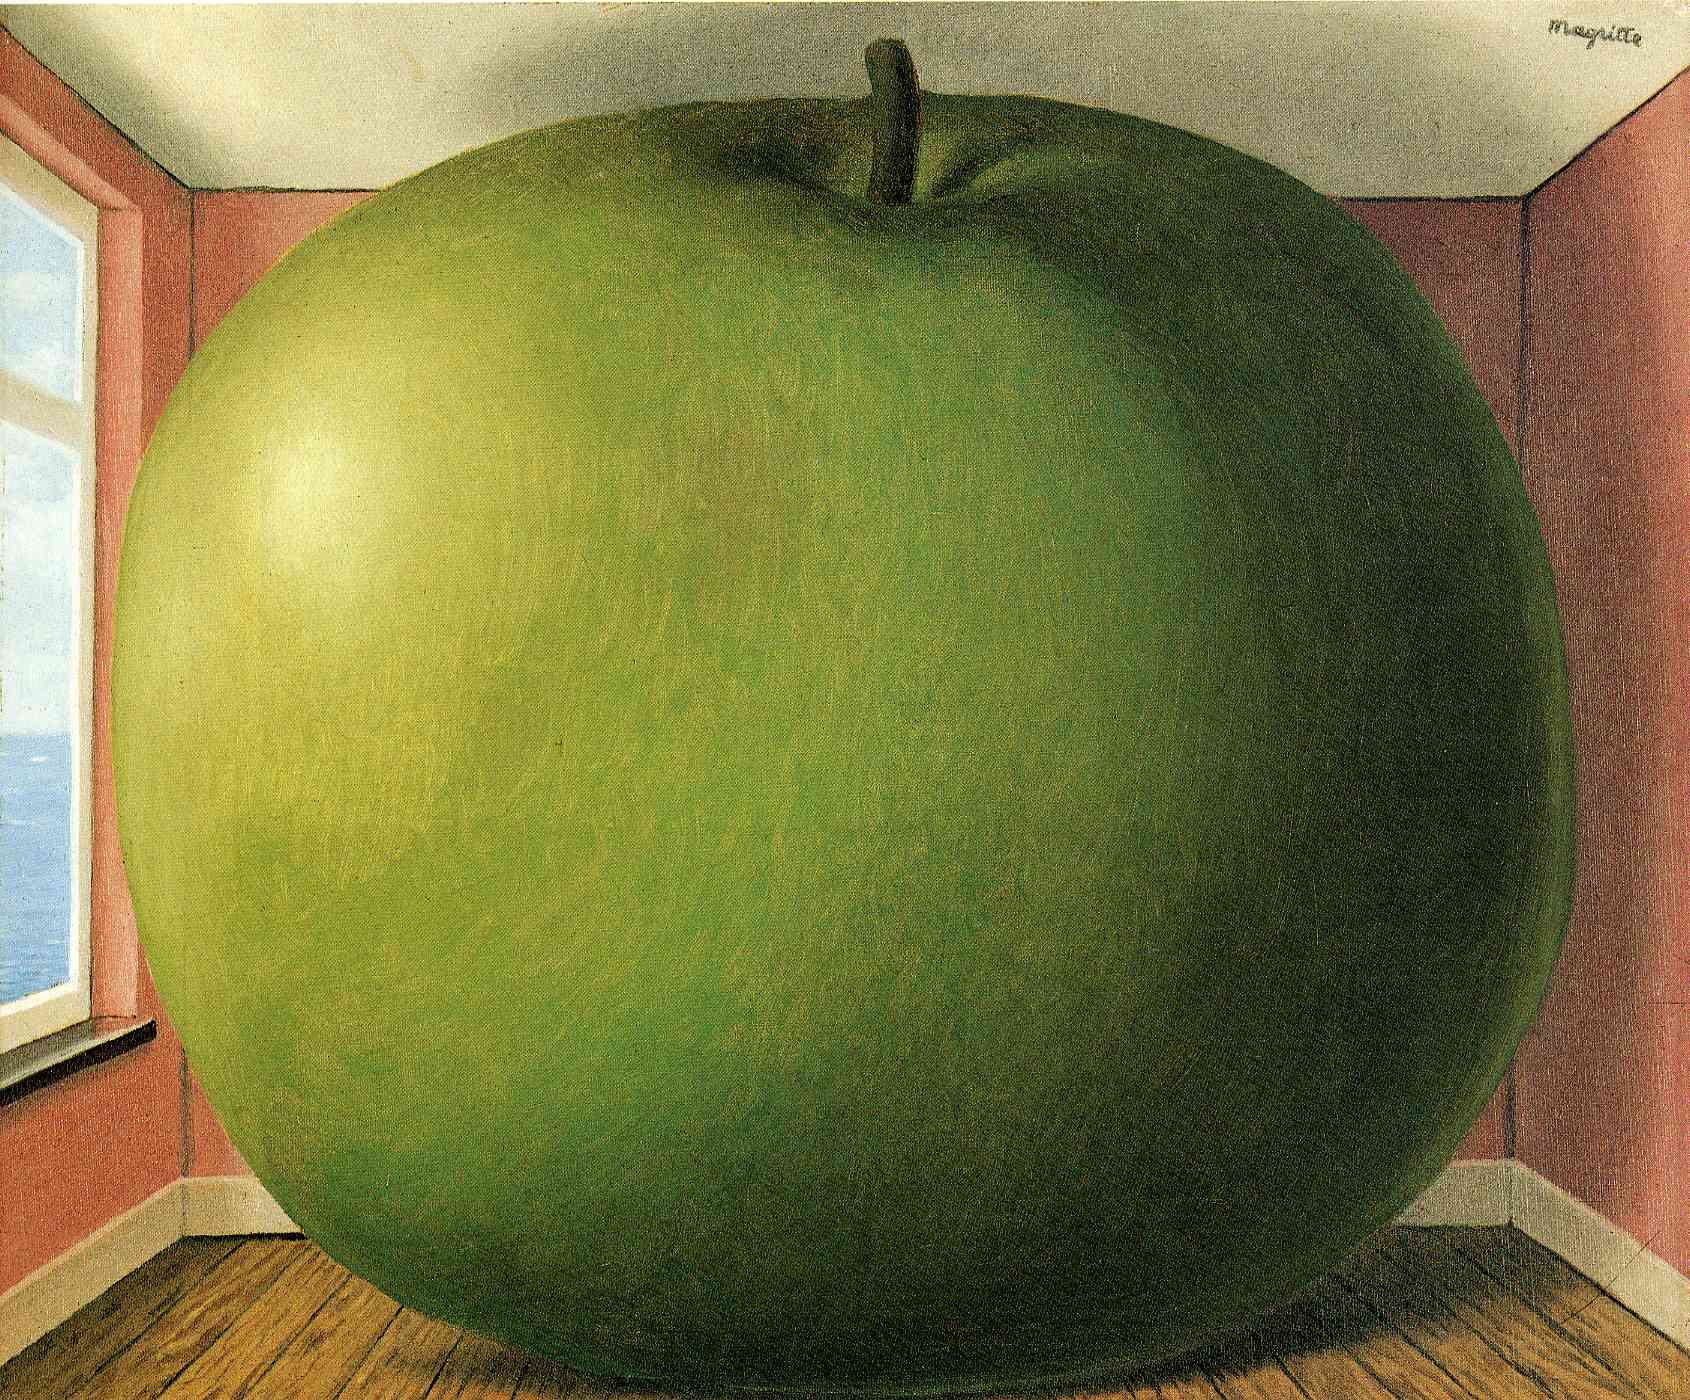 靜聆之屋 by René Magritte - 西元1952 - 55 x 45 公分 